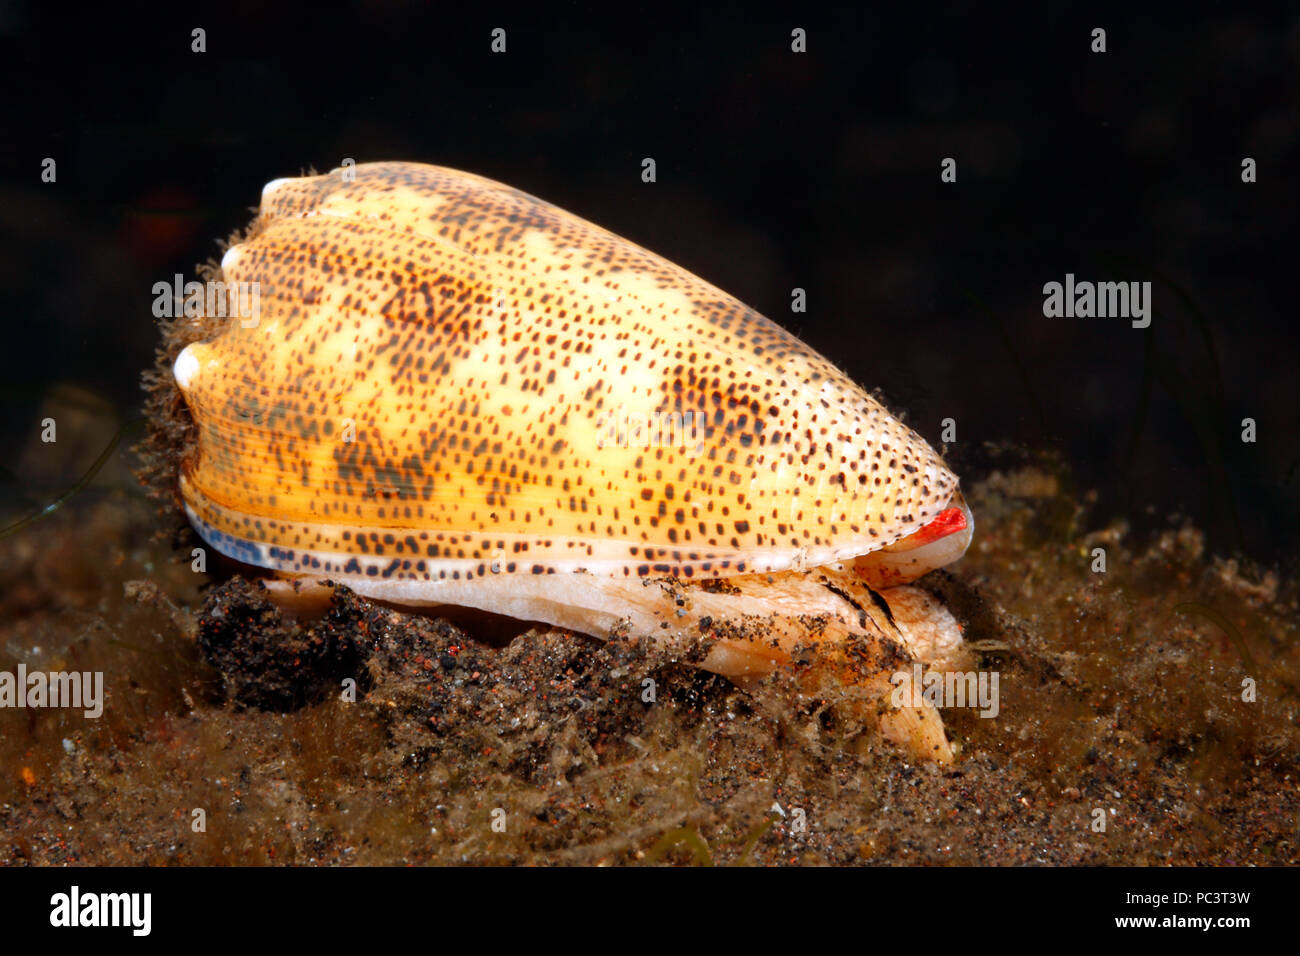 Cône de sable-épousseté Shell, Conus arenatus. Vivant sous l'eau, montrant le pied, manteau, syphon et oeil. Tulamben, Bali, Indonésie. La mer de Bali, de l'Océan Indien Banque D'Images